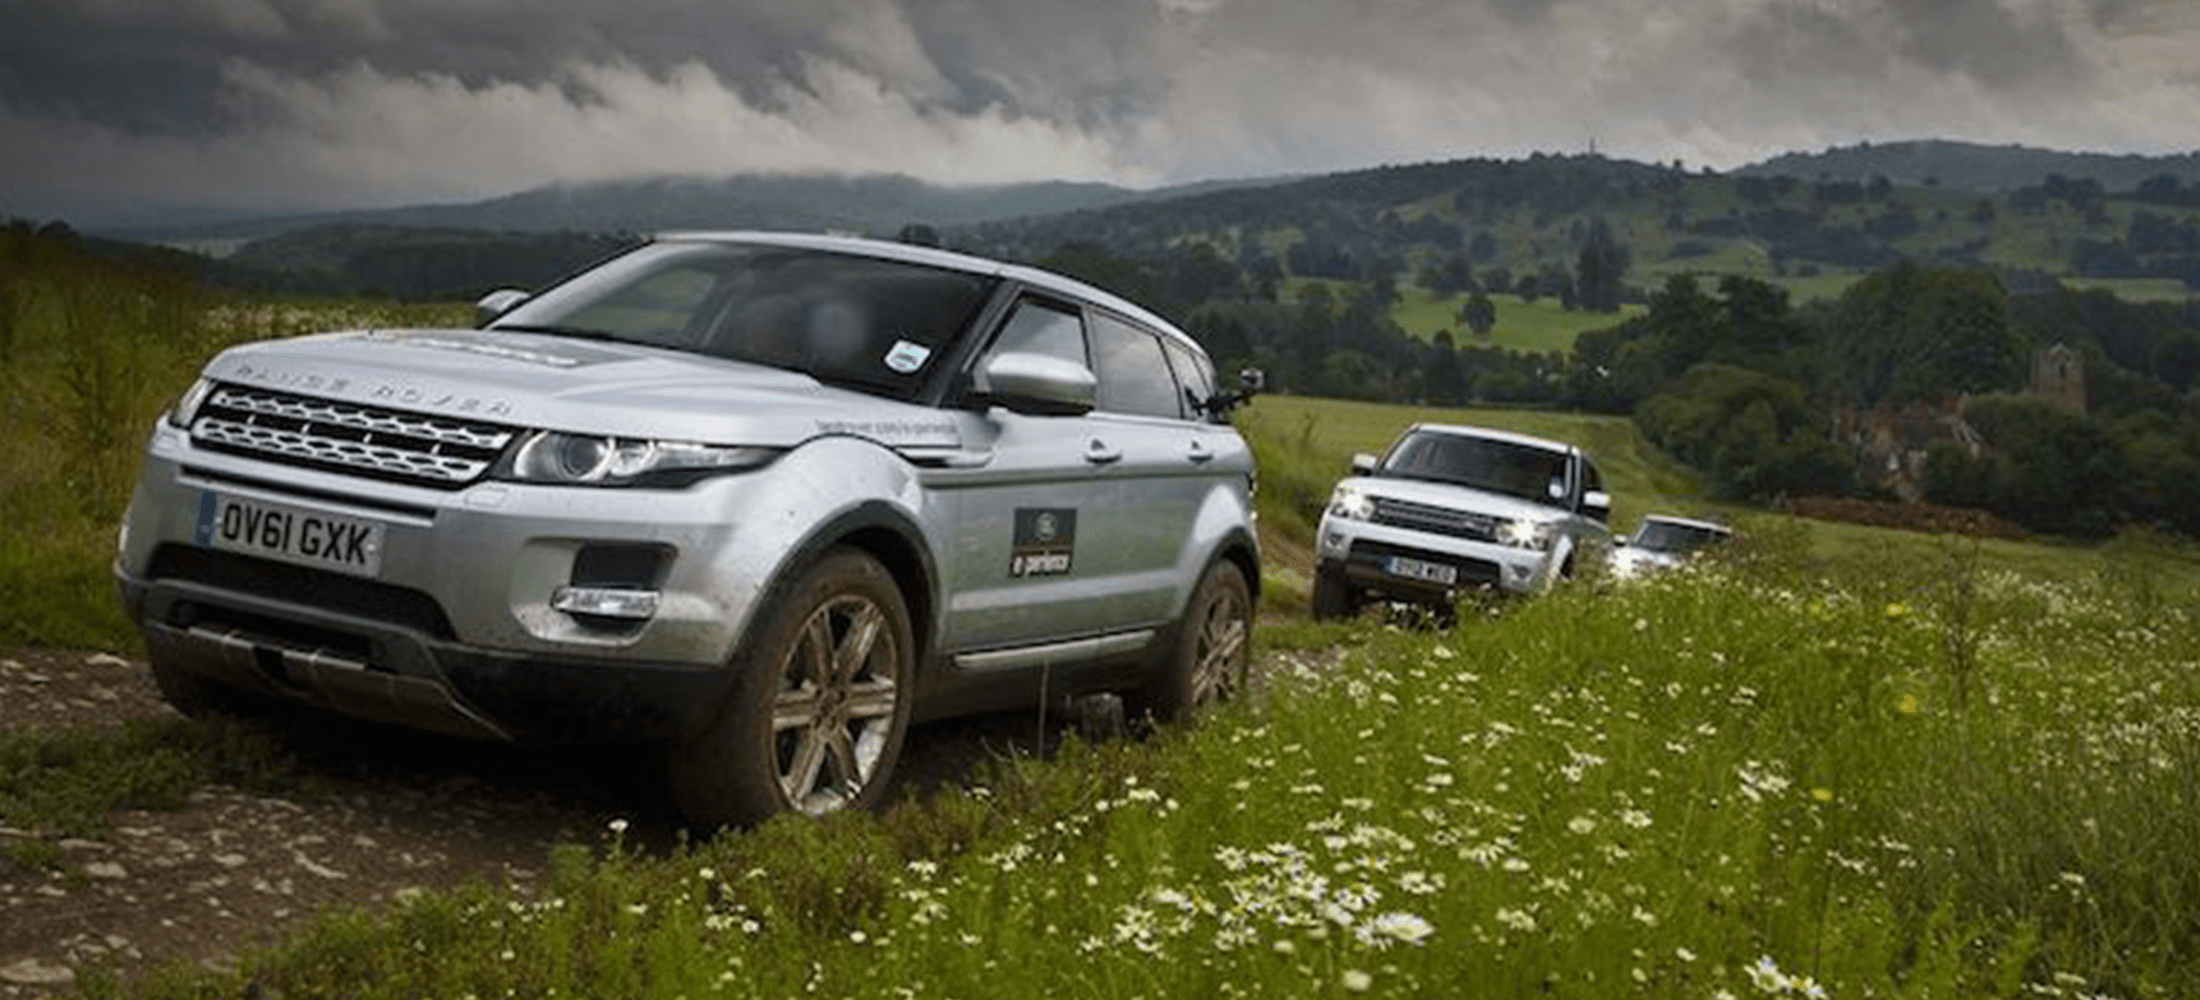 Land Rover gebraucht Check